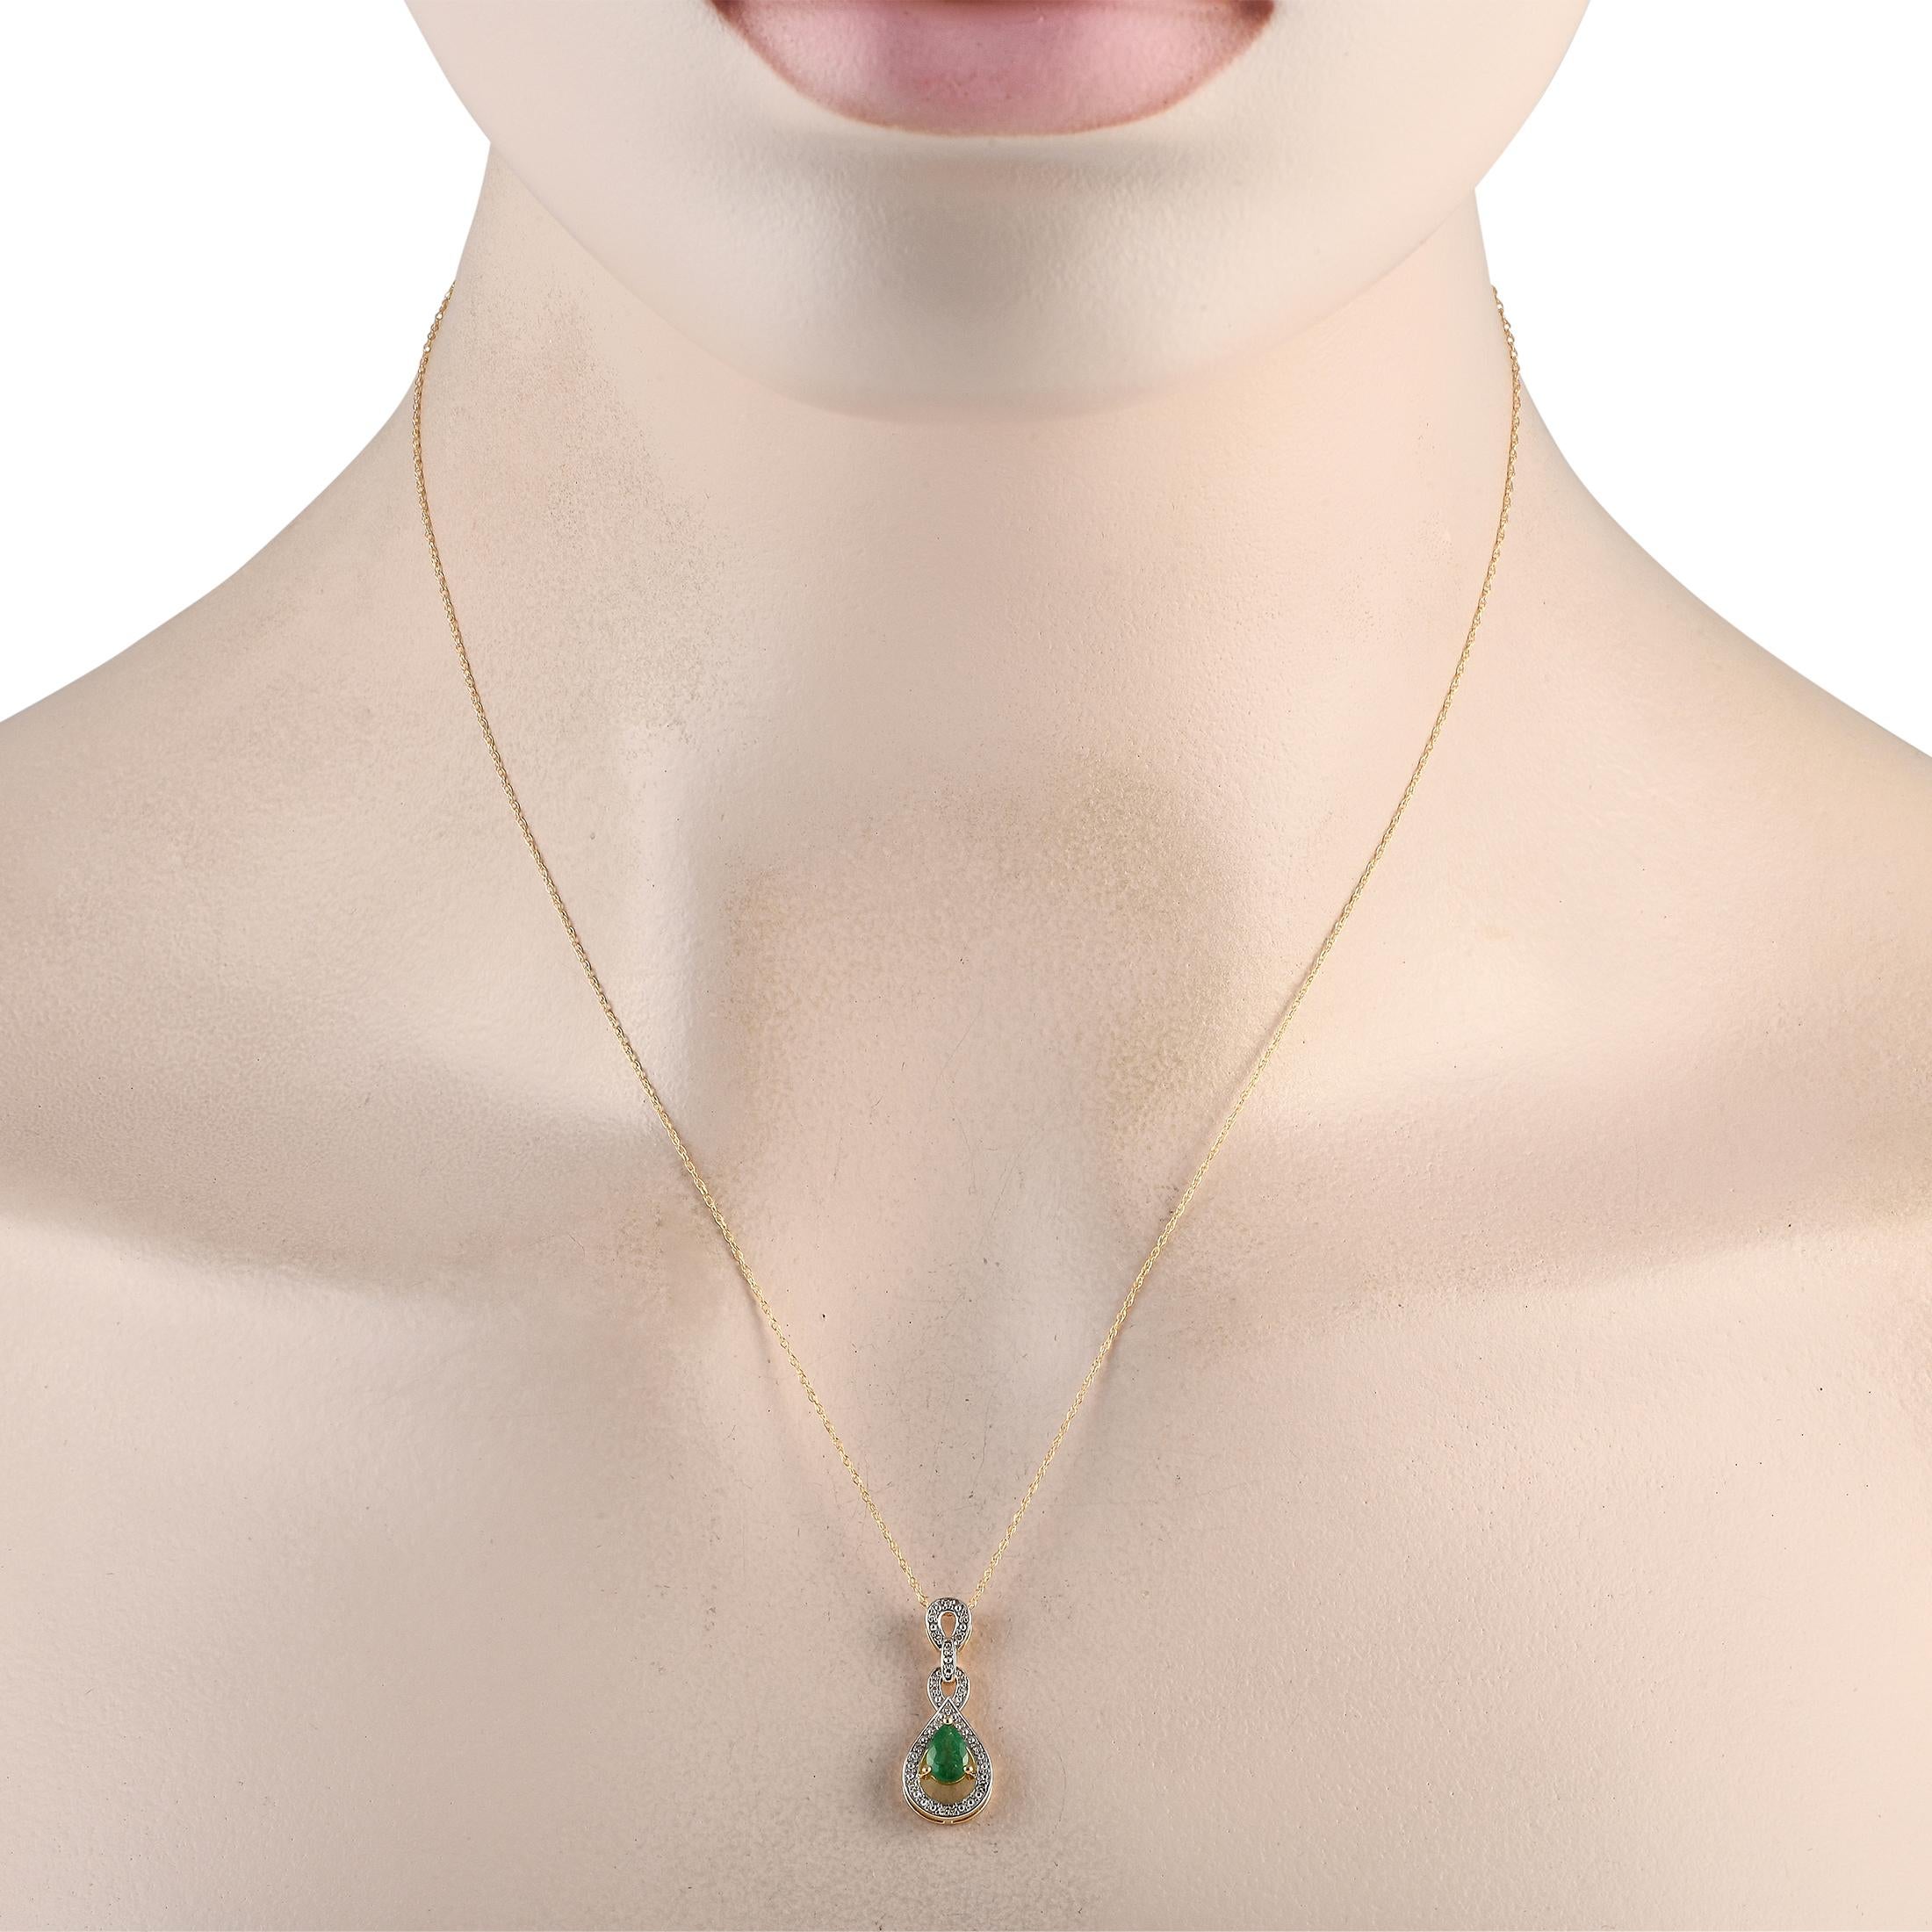 Ein wunderschöner Smaragd in der Mitte verleiht dieser eleganten, unaufdringlichen Halskette Farbe und Dimension. Auf diesem Stück verwickelt 14K Gelbgold Anhänger  der 0,85 lang und 0,45 breit ist  Zusätzliche Diamantakzente von insgesamt 0,08